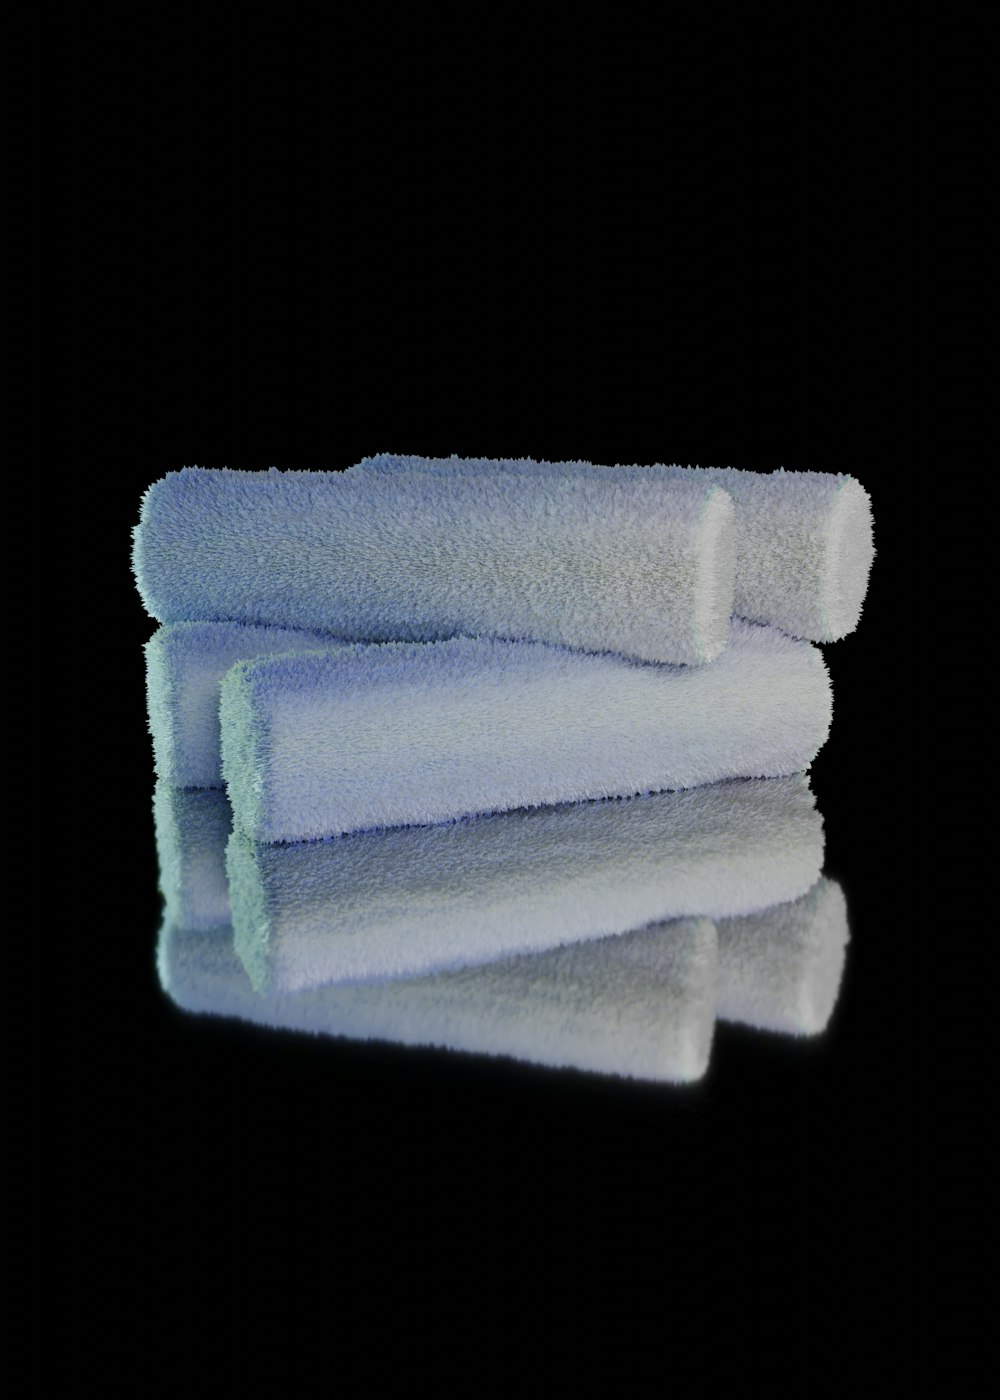 a close up of a towel